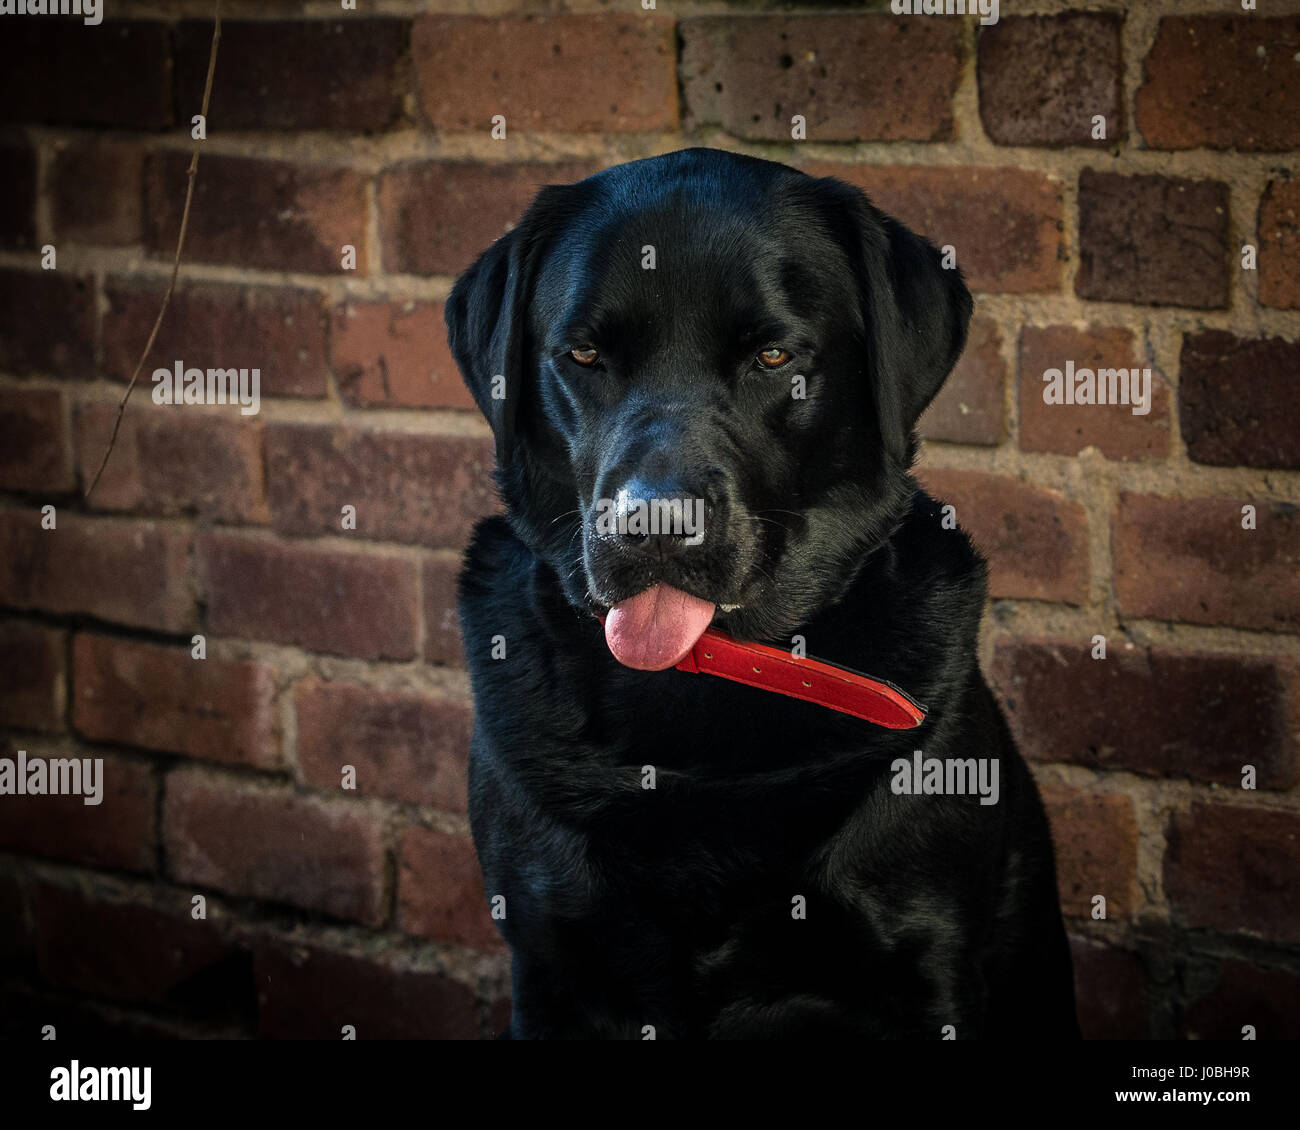 Black Labrador Retriever dog with tongue out Stock Photo